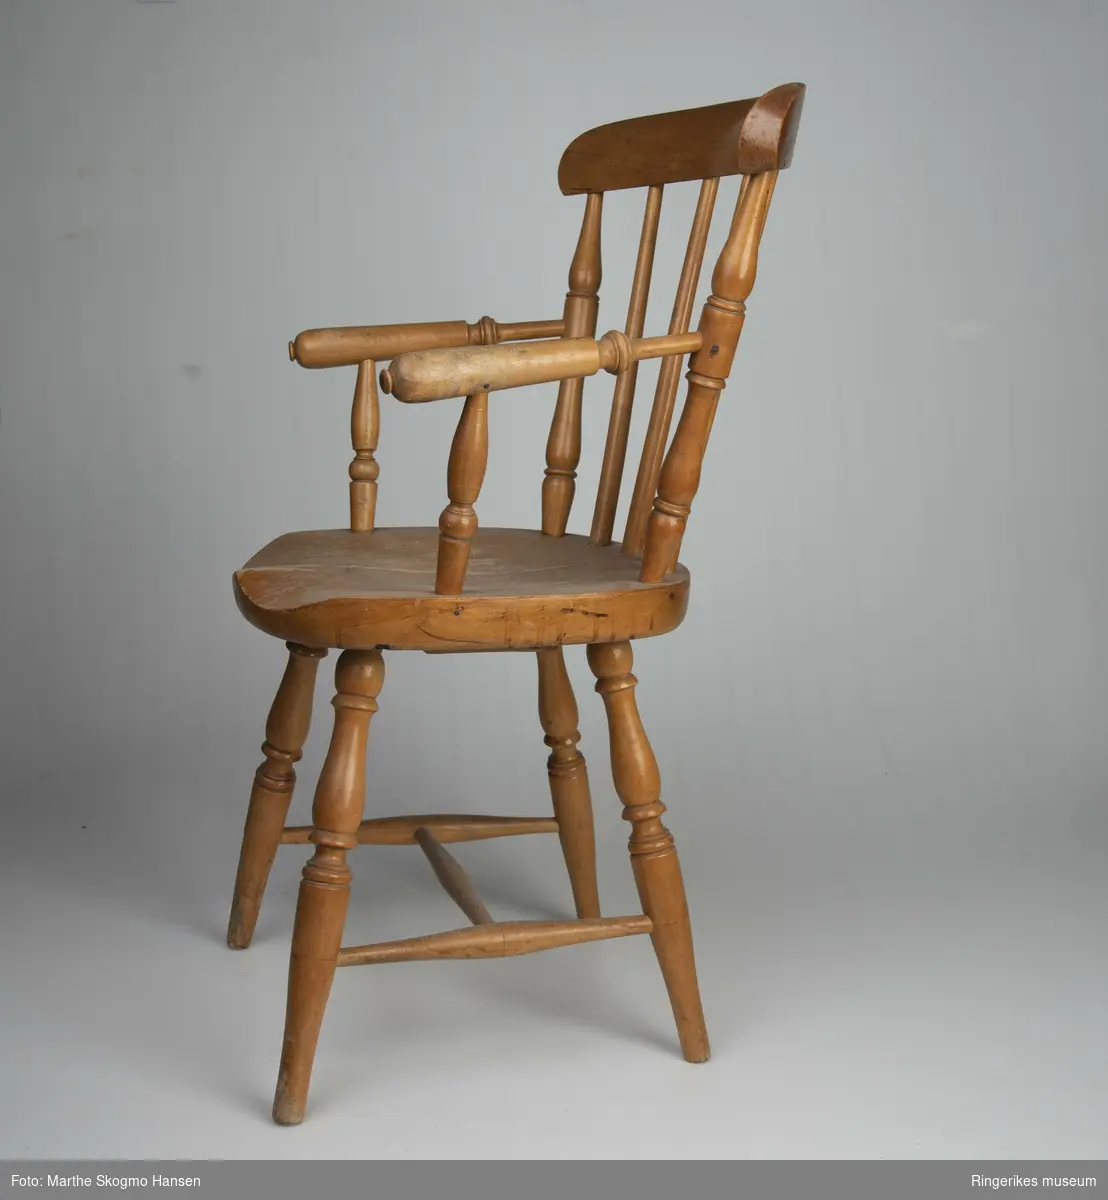 Barnestol med armlener, pinnestol. Stolen er profesjonelt laget. Alle beina er dreid med fint mønster, og mellom beina er det tre sarger i H-form. Ryggbrettet blir holdt oppe av 6 pinner og er ca. 5 cm bredt. De to ytterste pinnene er dreid i fin profil. Det er også armlenene. Ytterst på armlenene er det dreid en liten knapp. Knappen på høyre side er litt ødelagt. Setet har en fin sitteprofil. Stolen er lakkert. Lakken er slitt på setet og armlenene, og nederst på føttene. Sargene har også slitasjespor. Det er to sprekker i setet, og under er det skrudd på en trekloss, muligens for å stabilisere det.